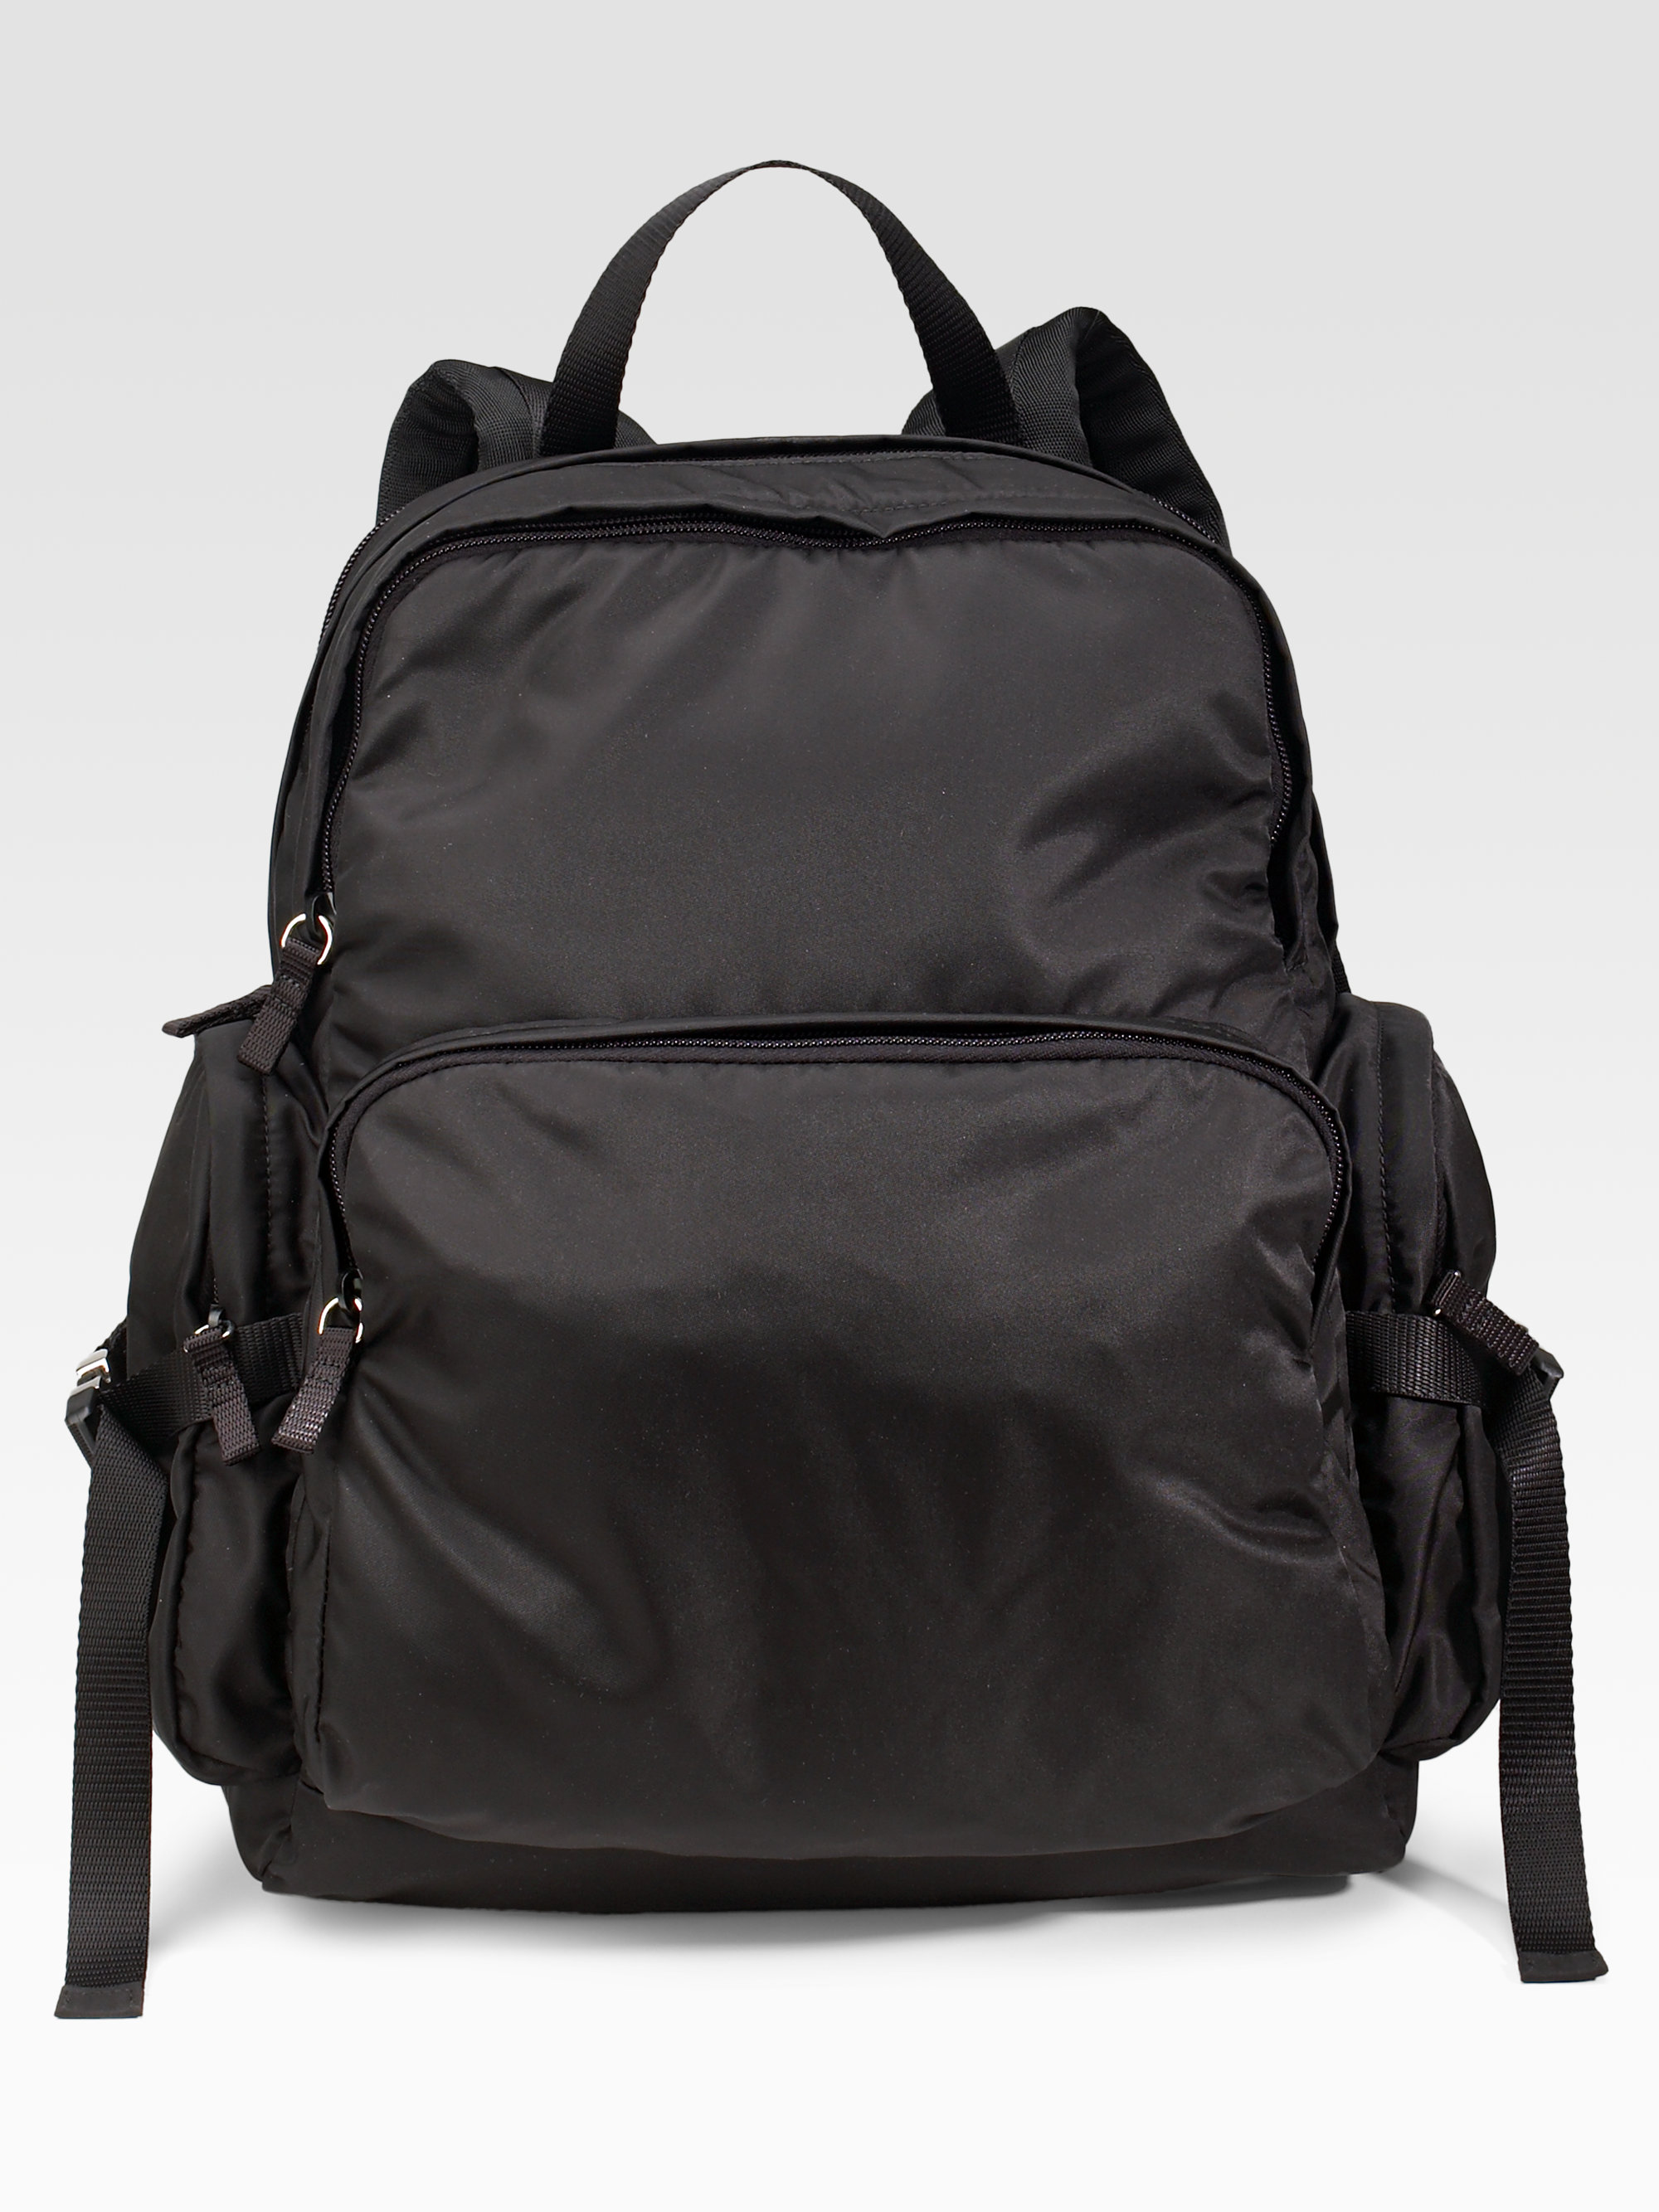 Backpack Nylon Black 85